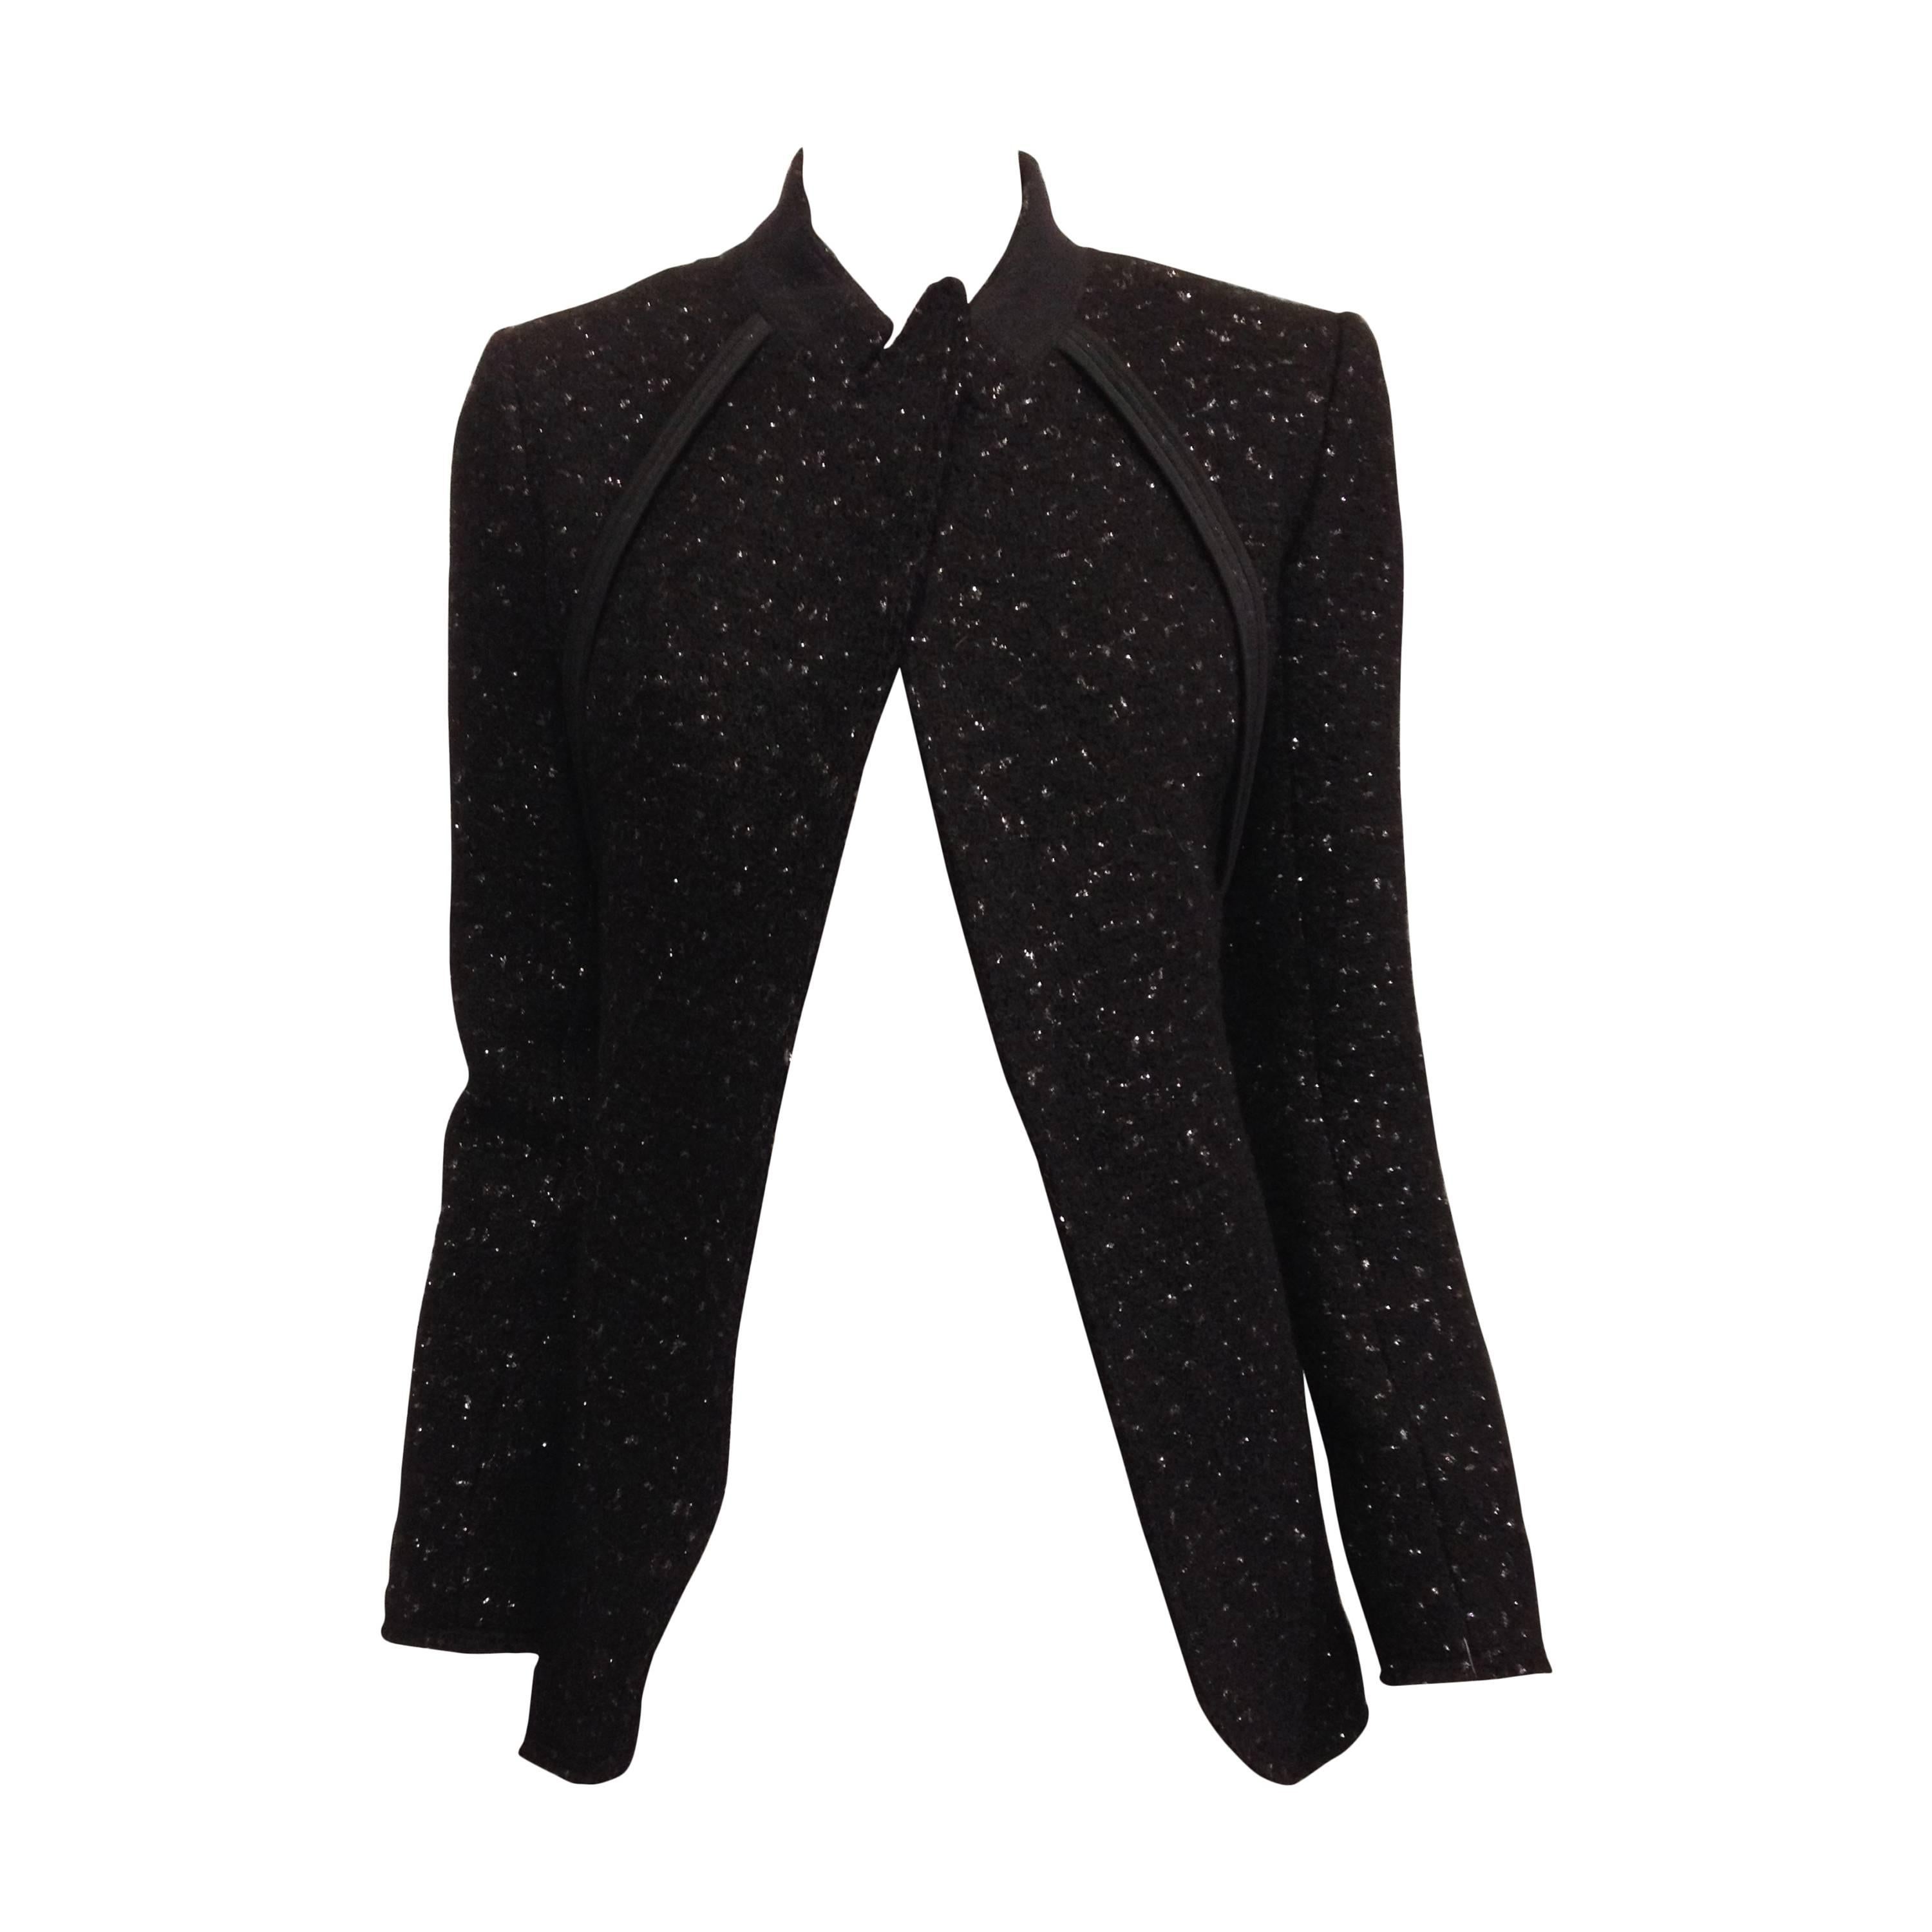 Celine Black Sparkly Wool Jacket Size 36 (4) For Sale